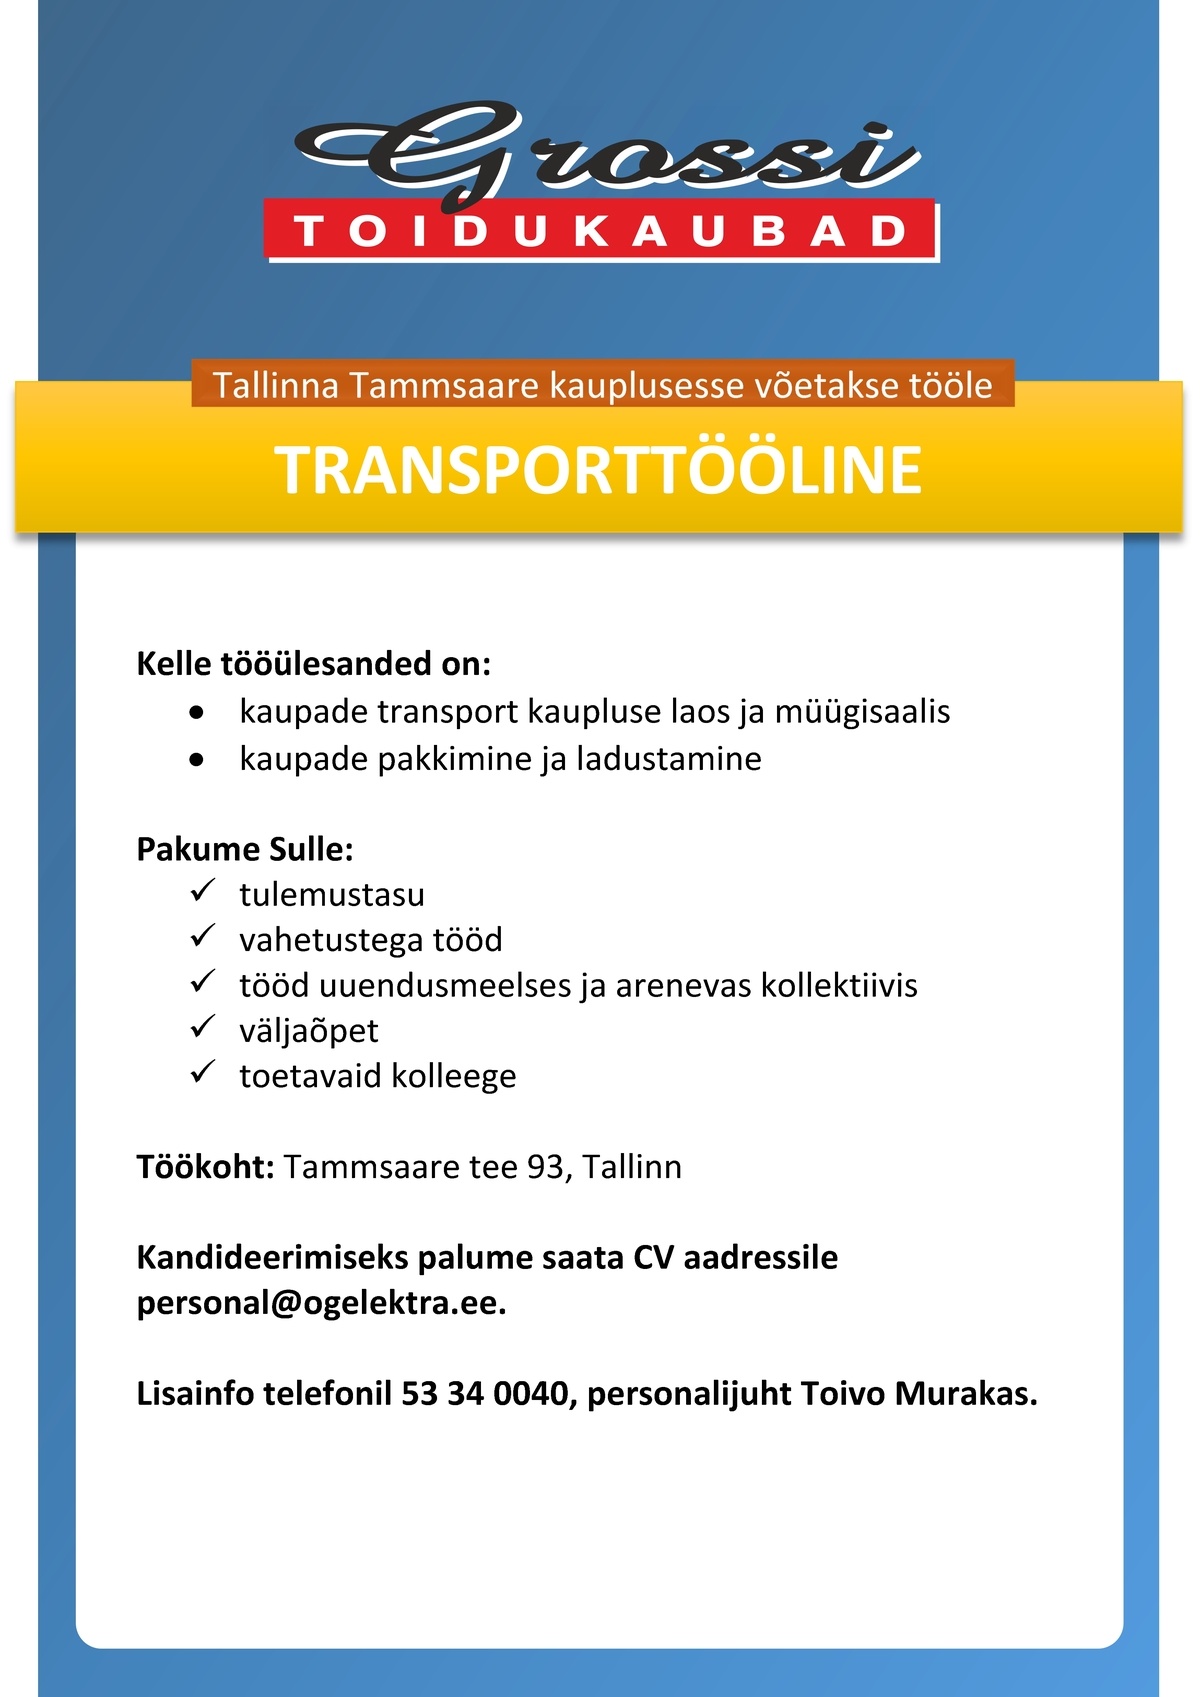 OG Elektra AS Transporttööline (Tammsaare)